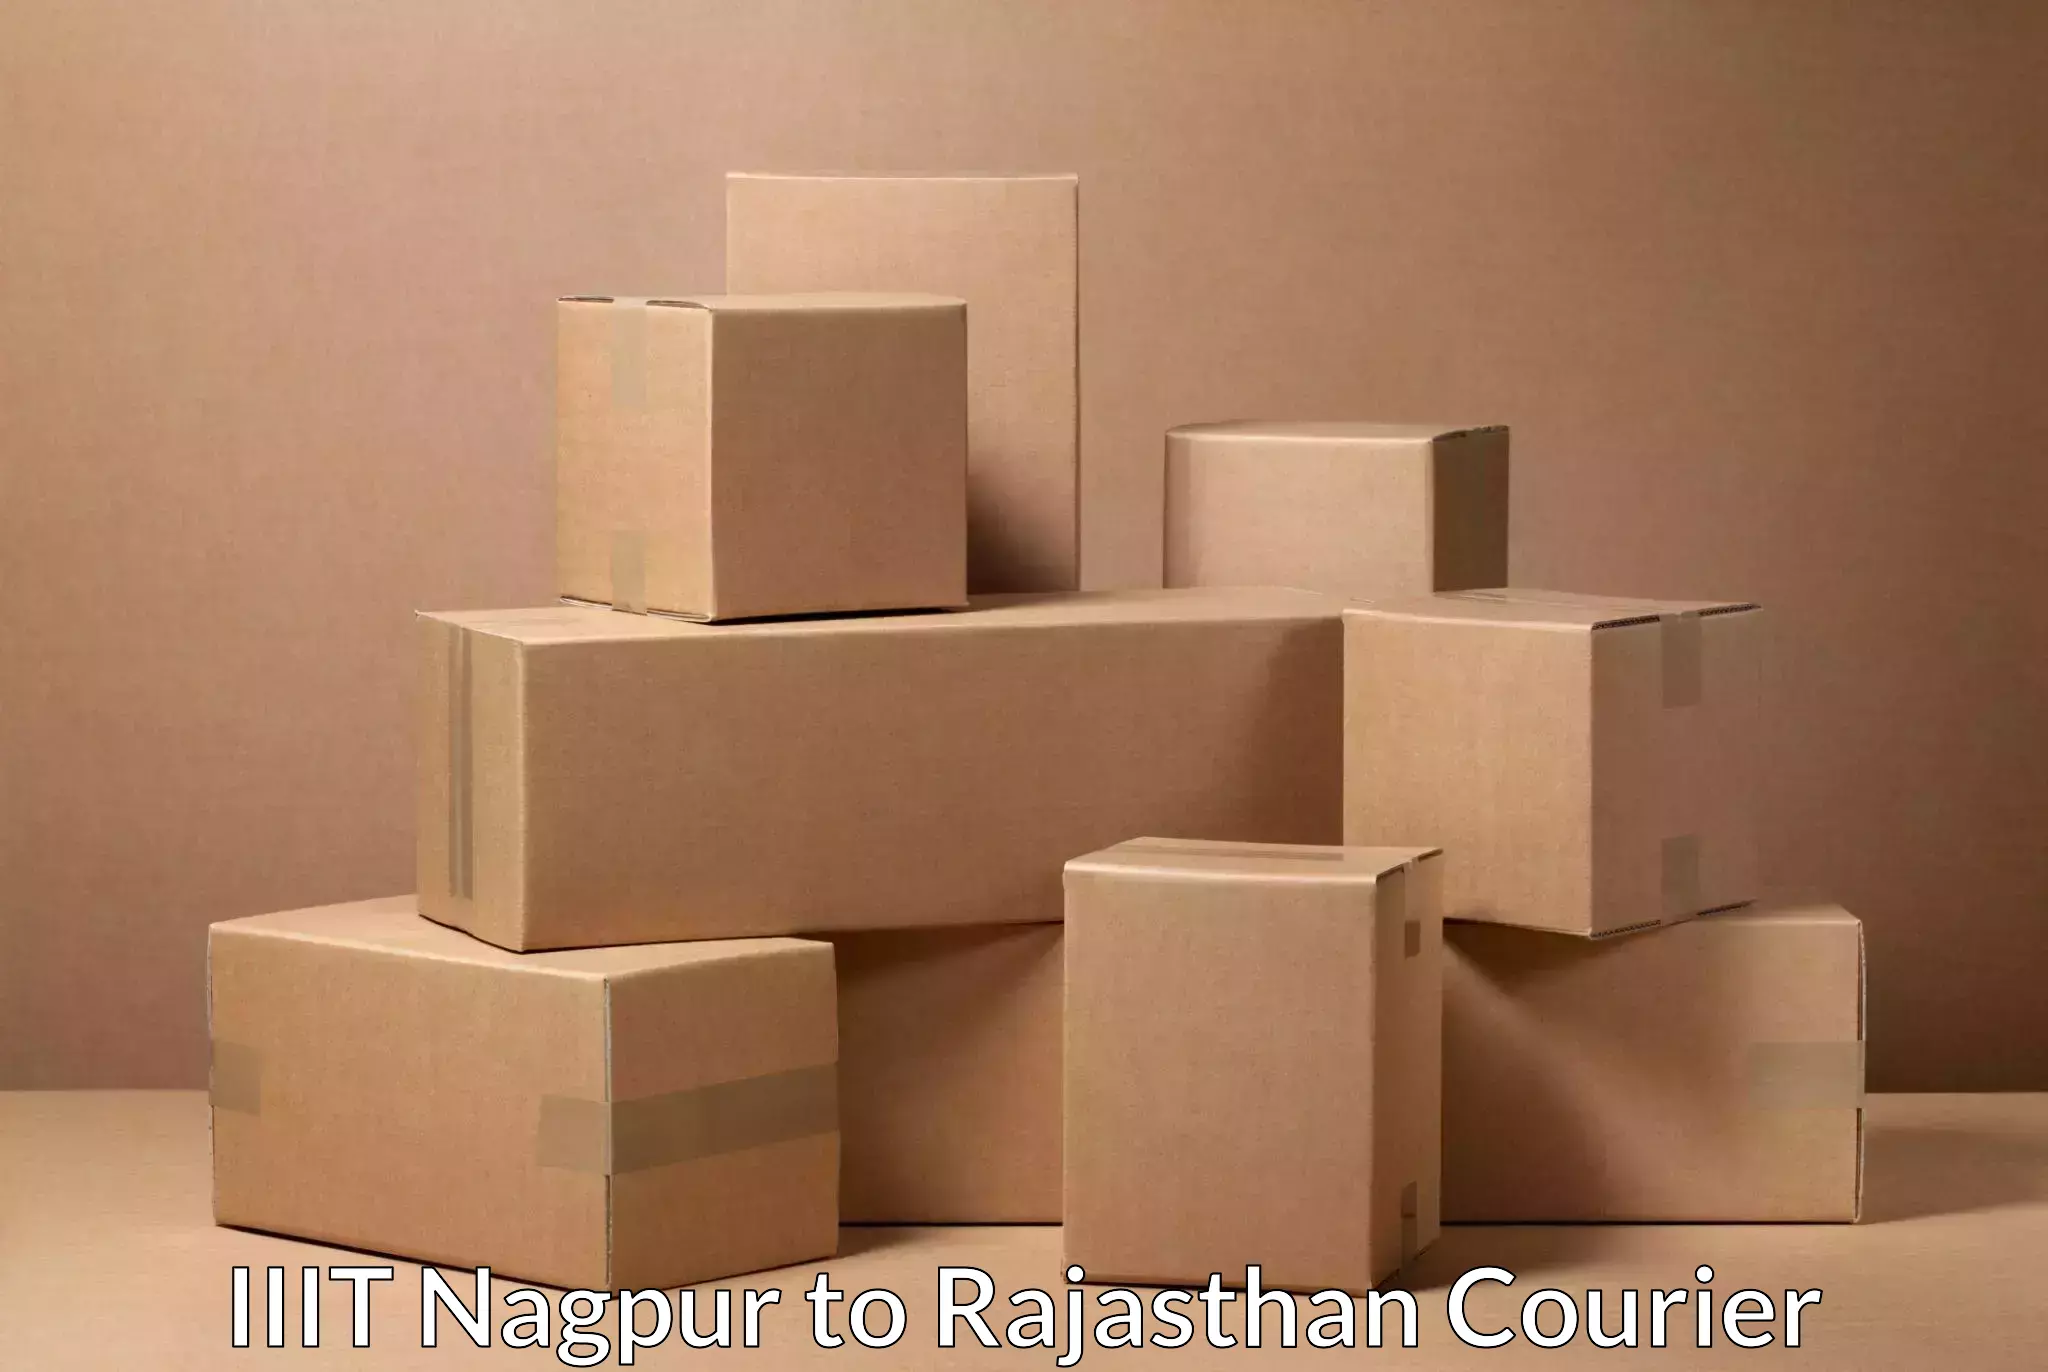 Supply chain efficiency IIIT Nagpur to Hanumangarh